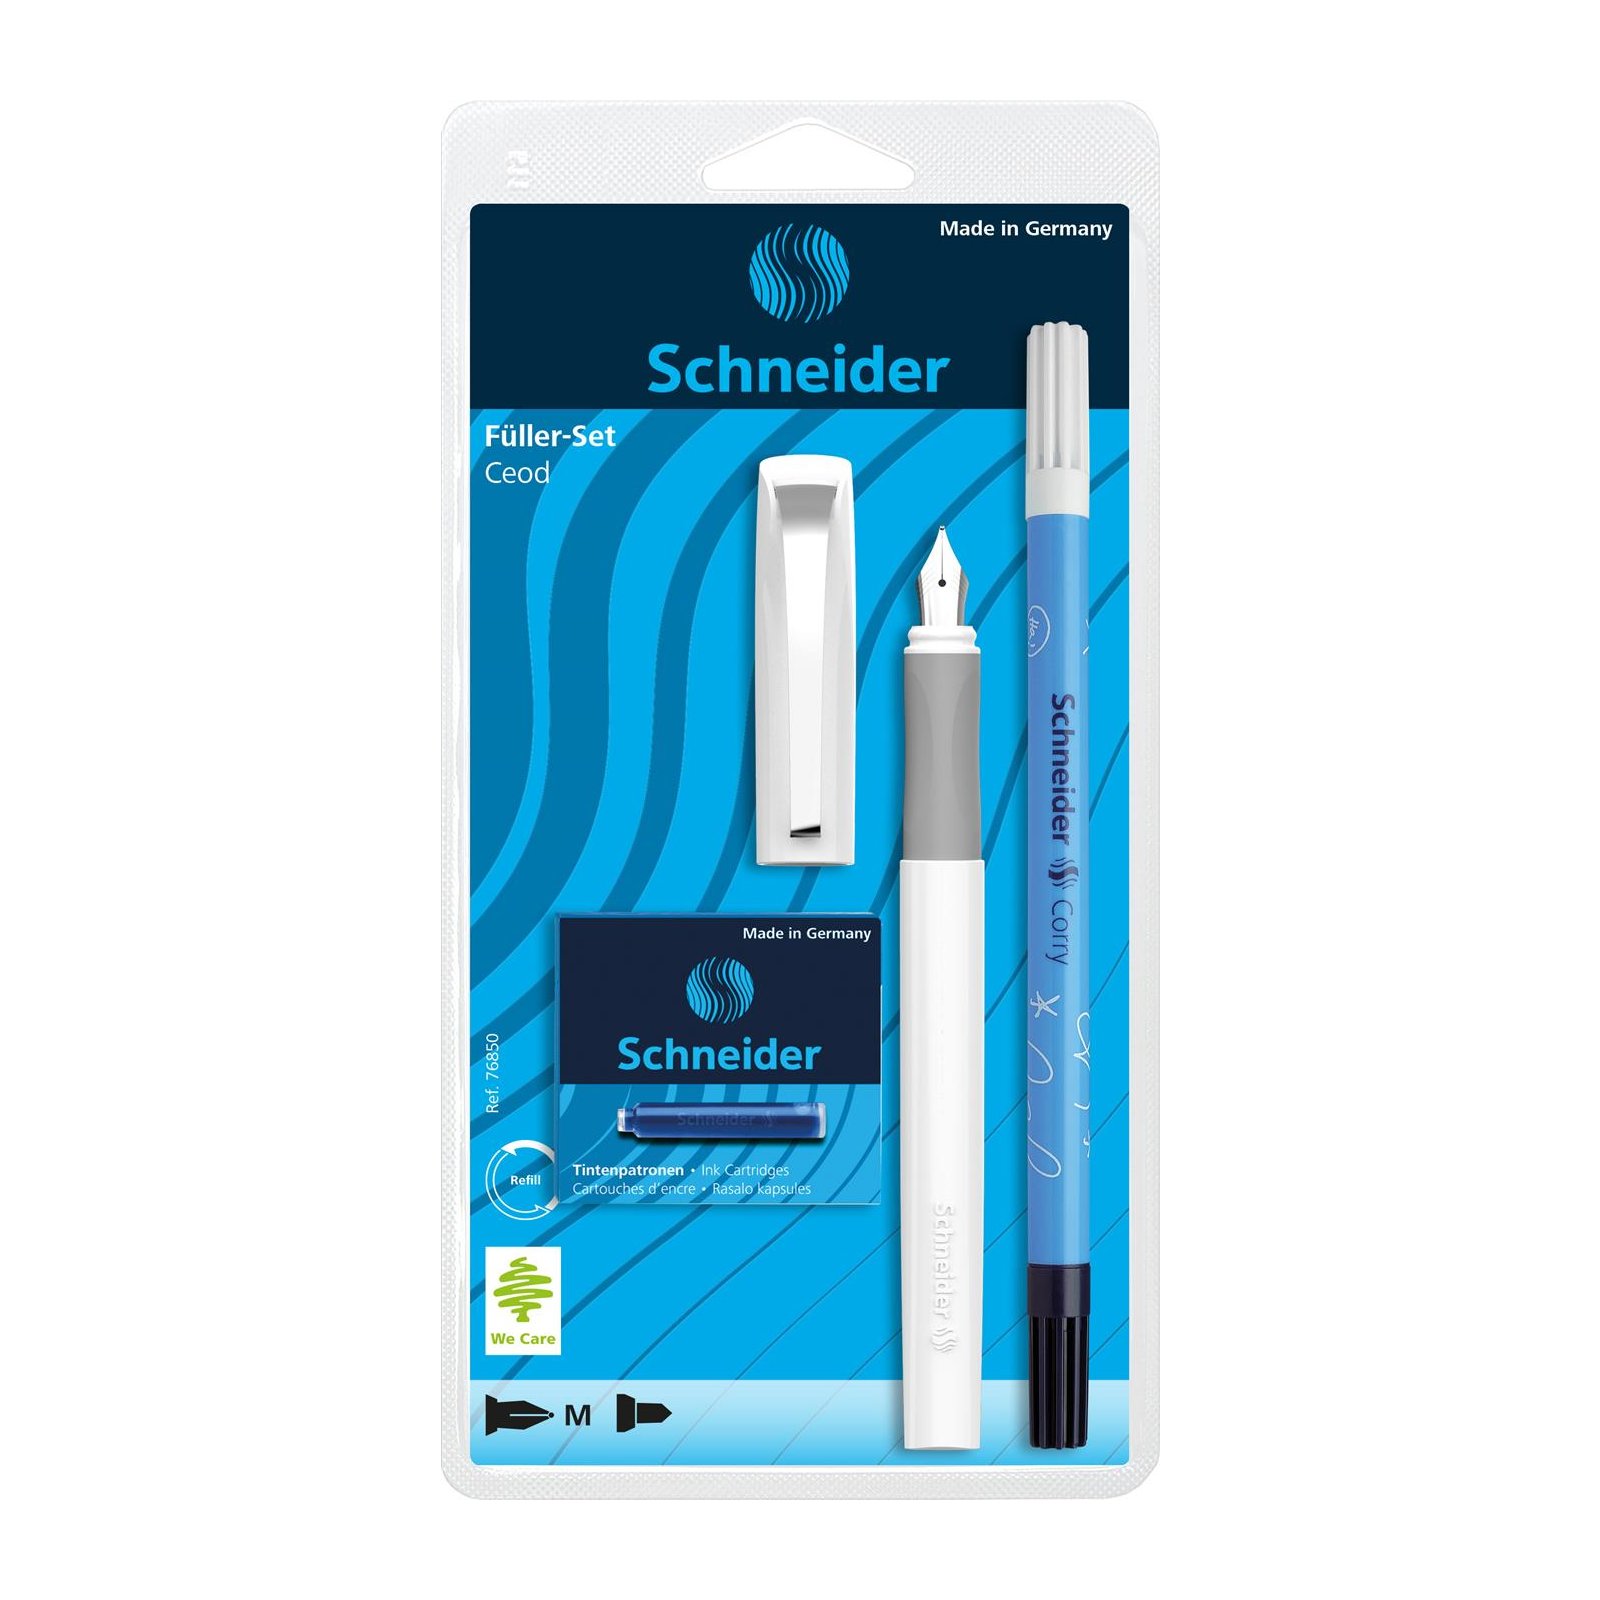 Schneider Ceod Classic Fuellhalter-Set 3-teilig weiss 1153346 - schul, 8,99  €